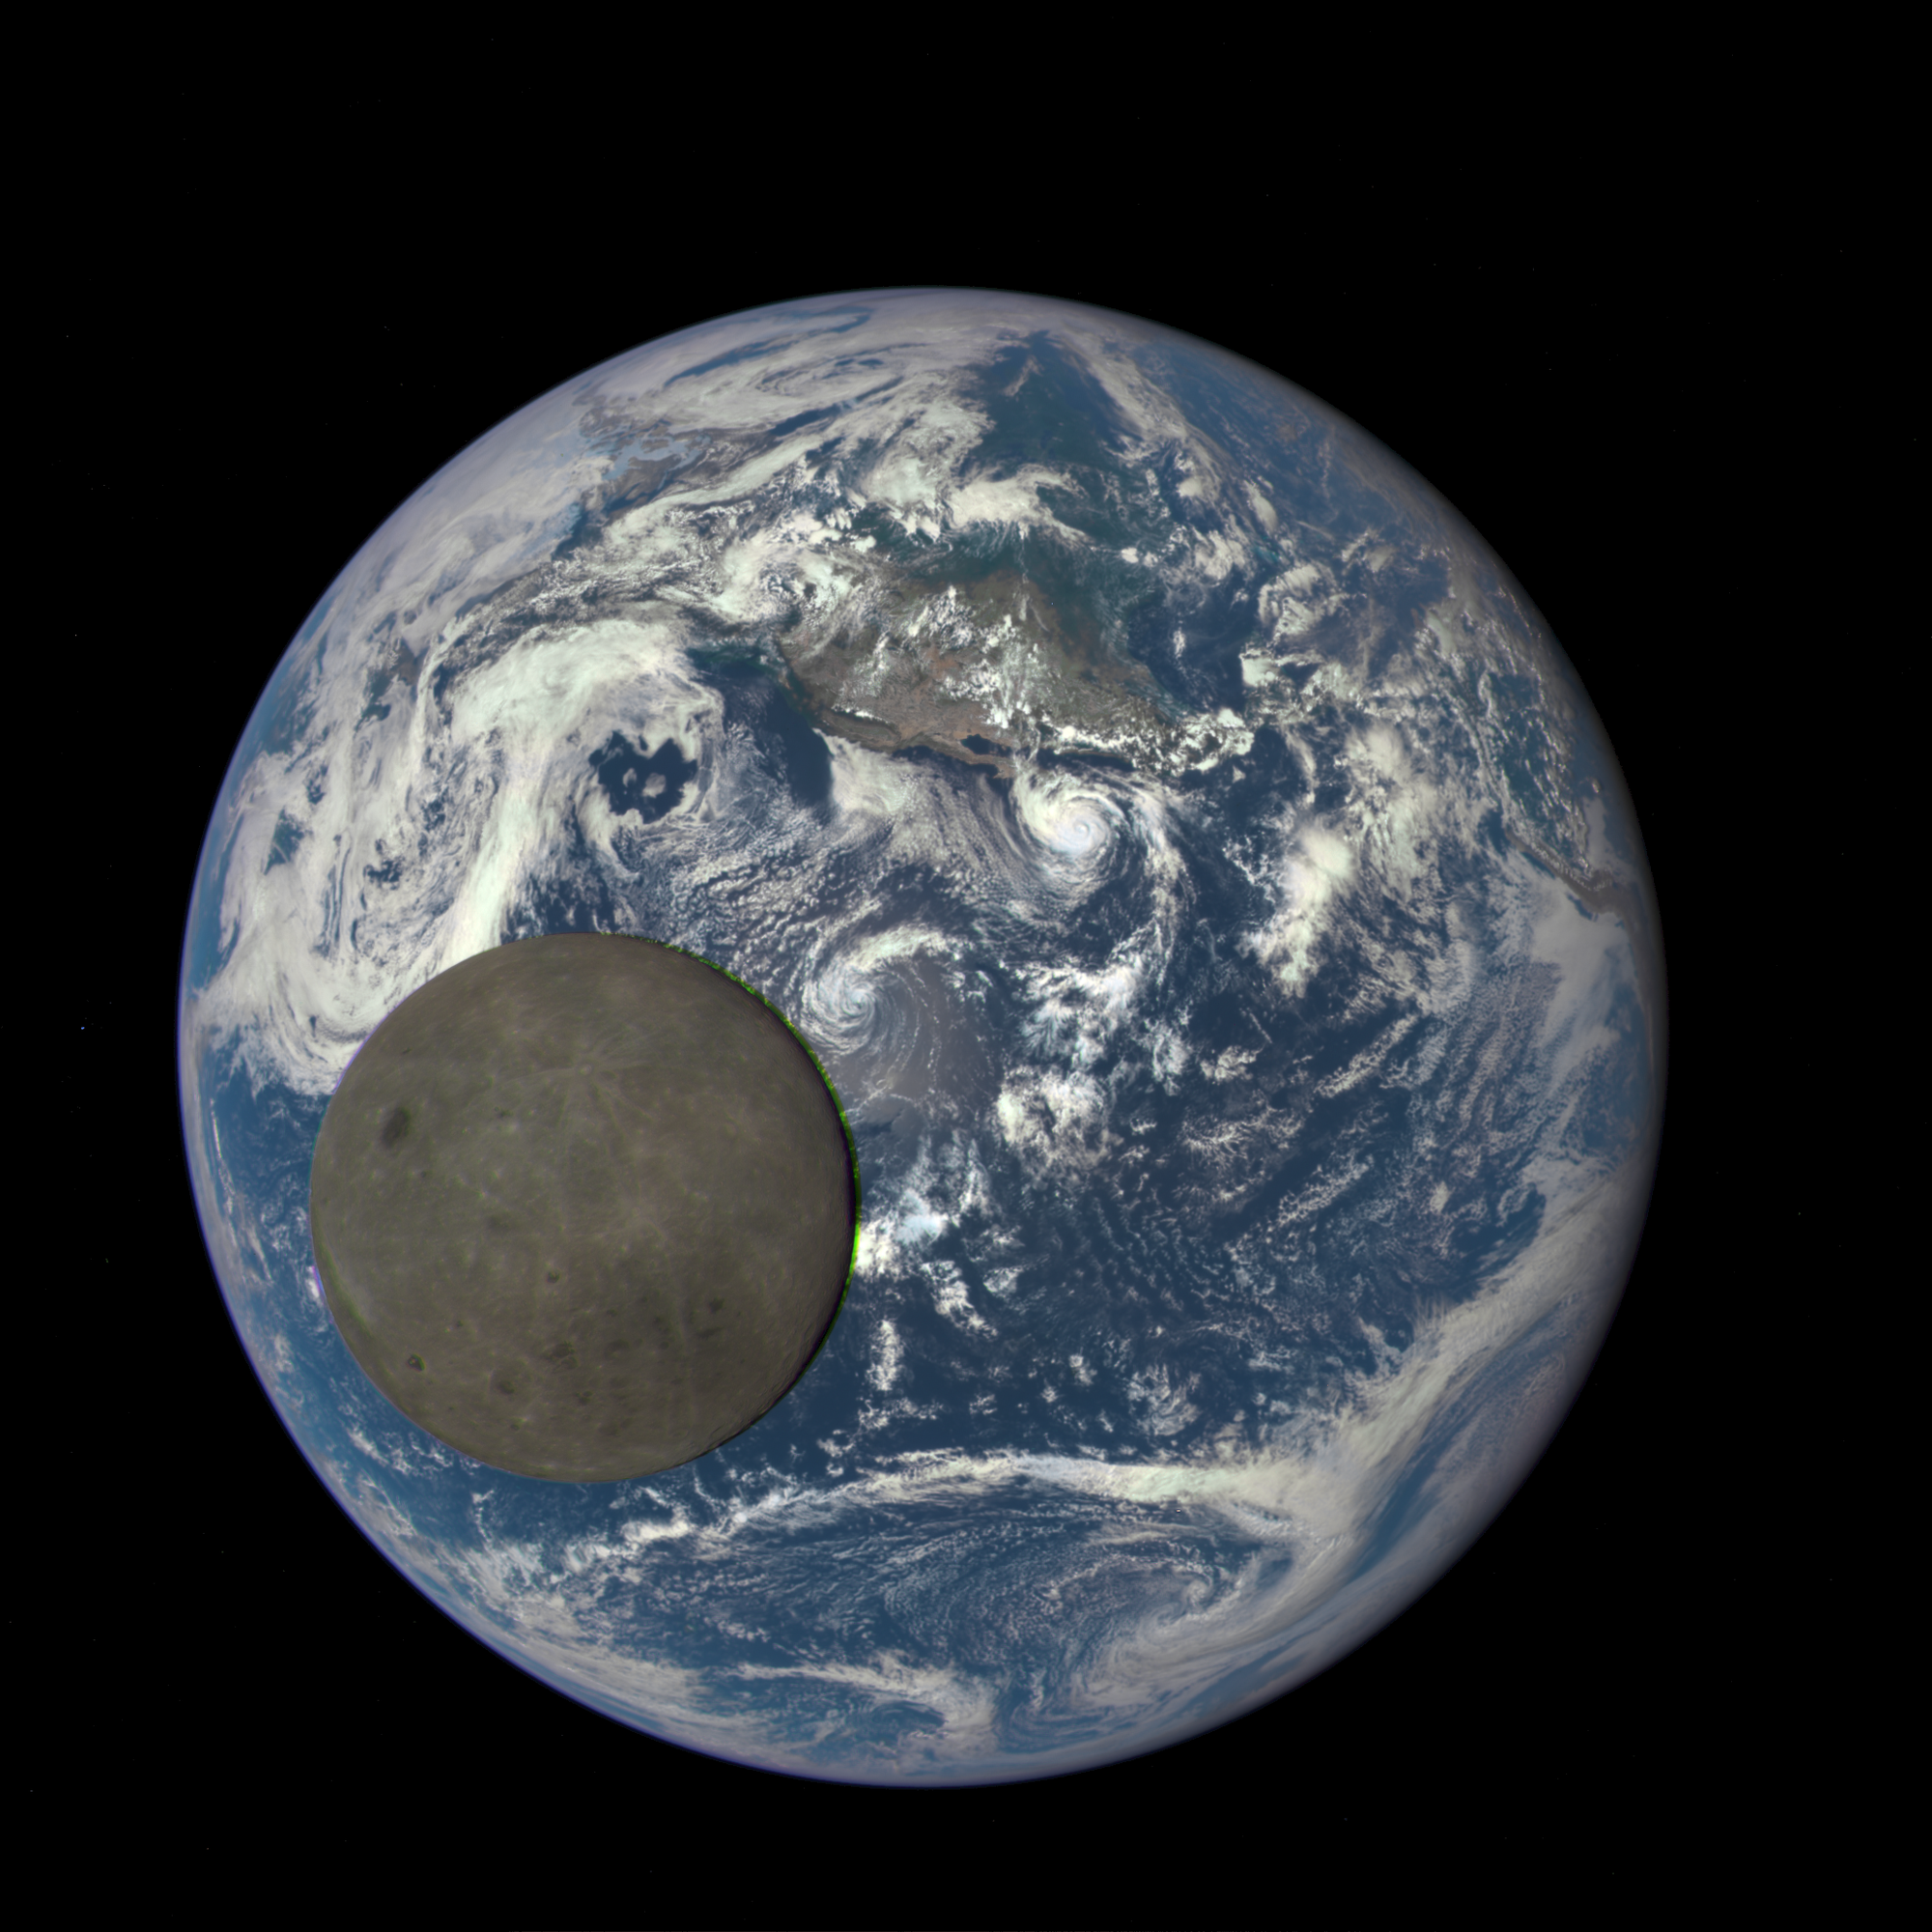 Der Vollmond passiert die Erde am 16. Juli 2015 (Aufnahme des Satelliten DSCOVR)